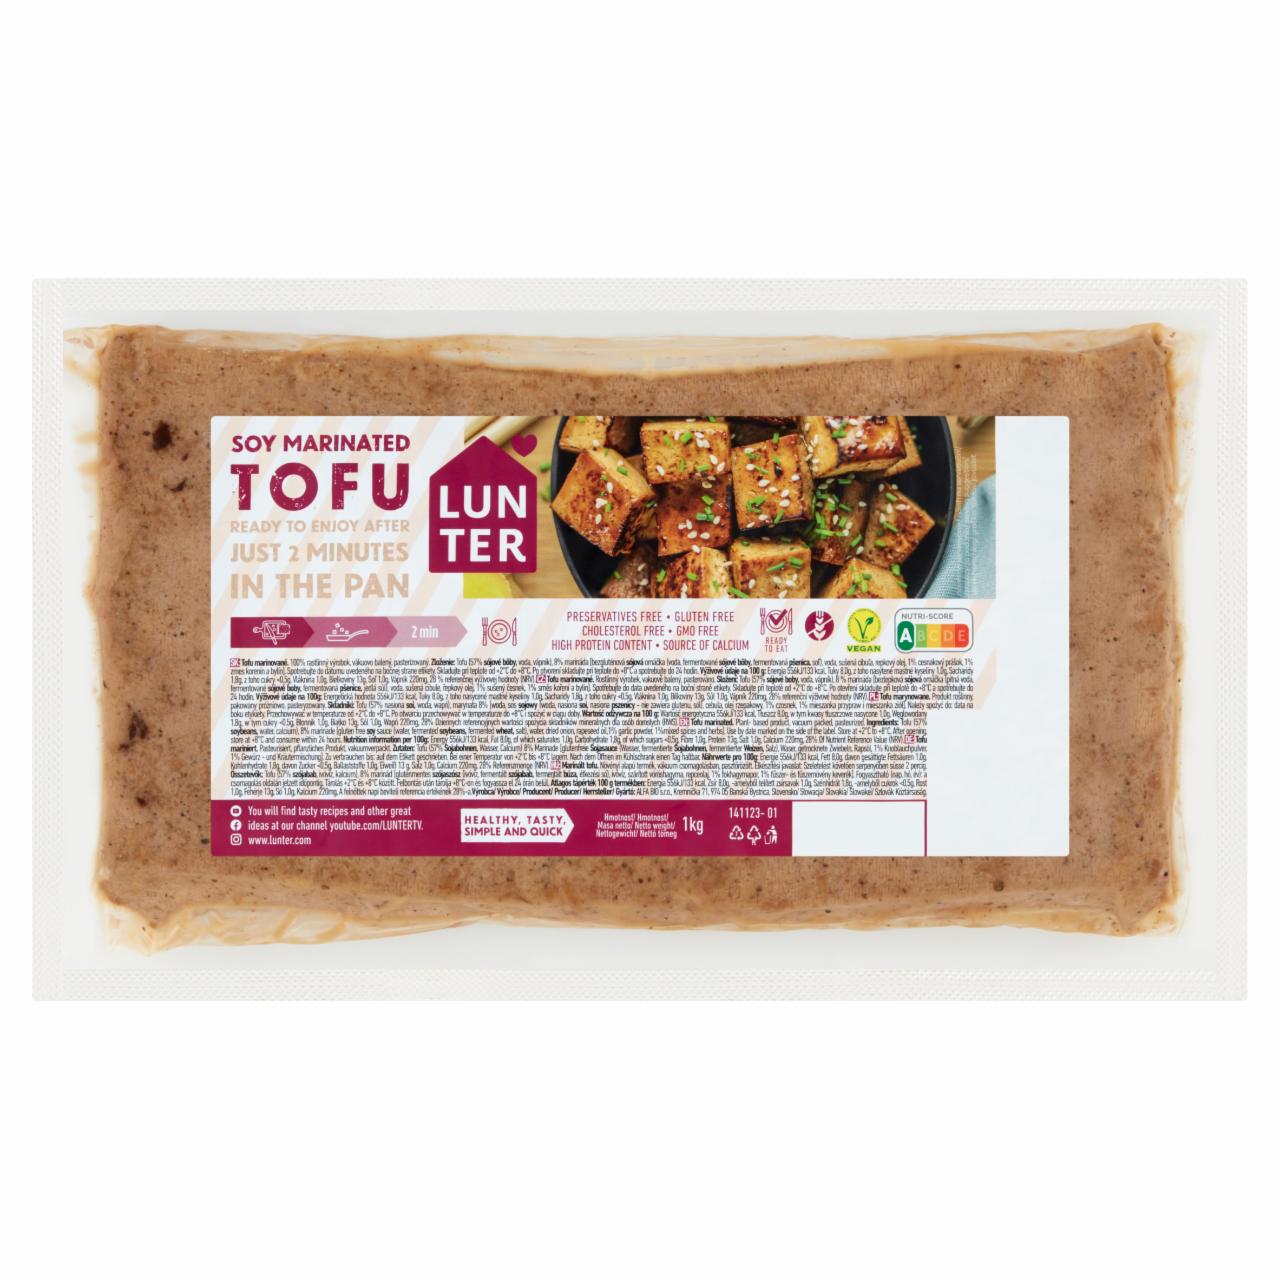 Képek - Lunter tofu csemege 1 kg